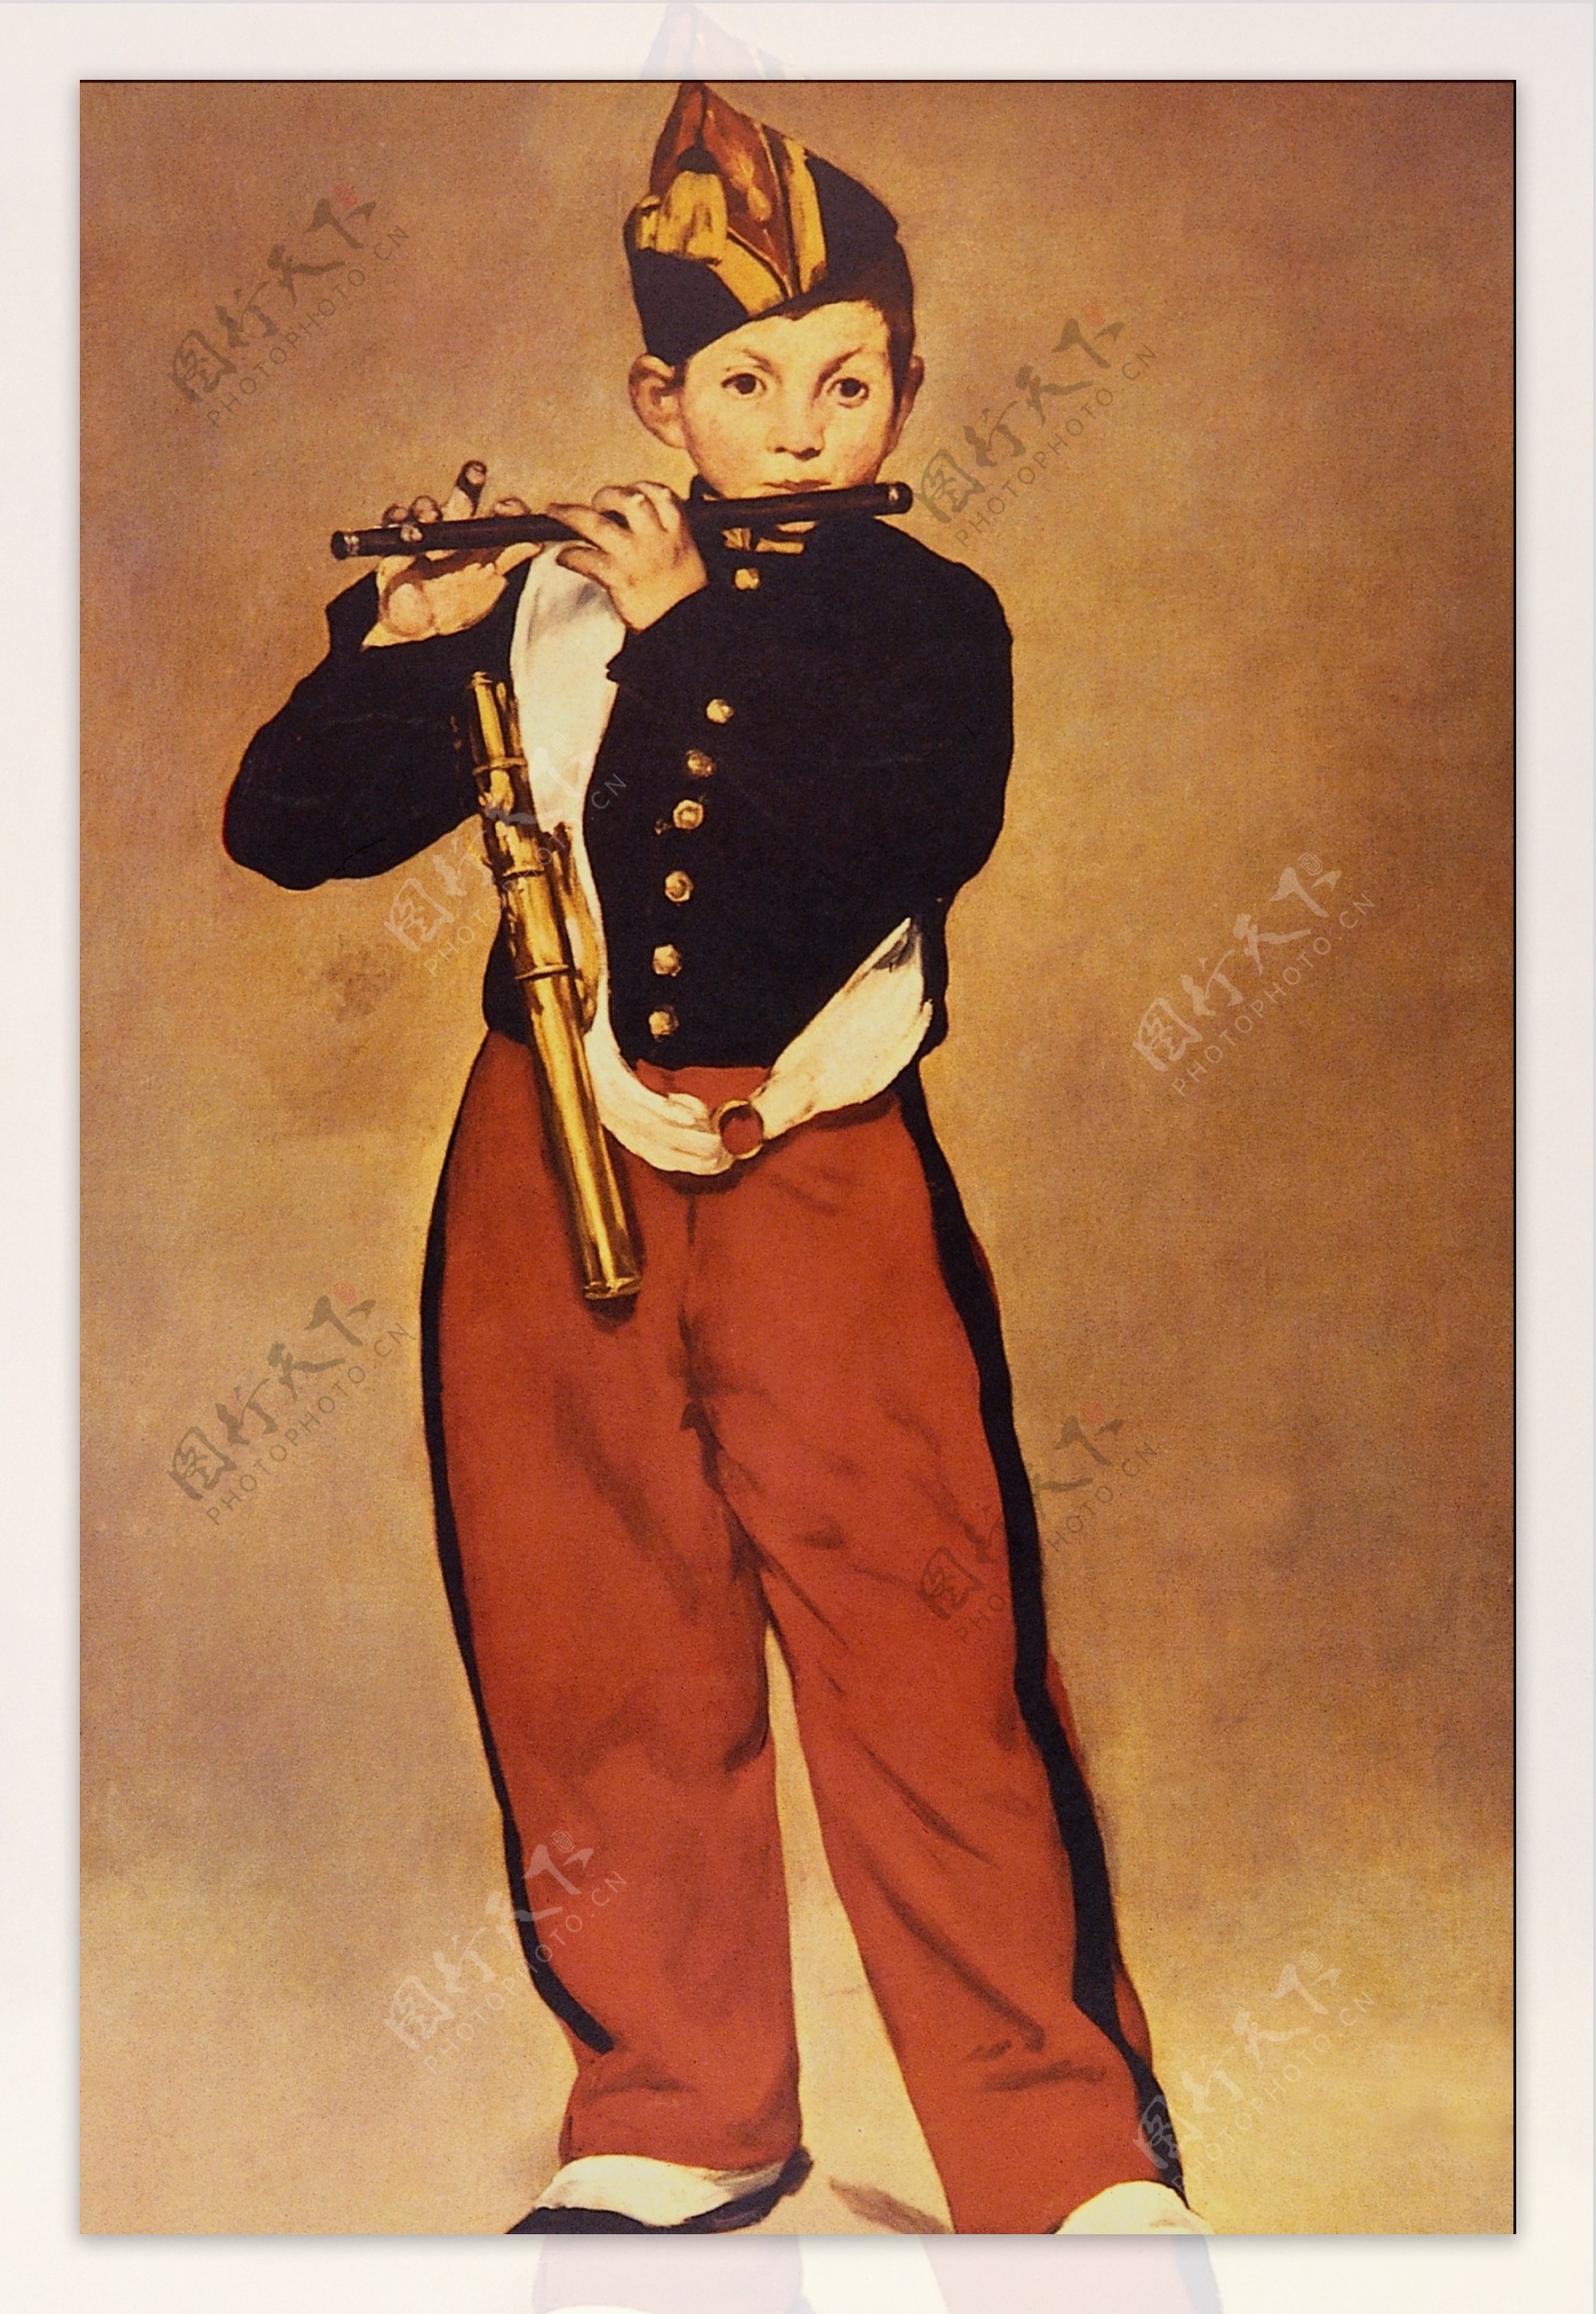 吹笛子的人物油画图片